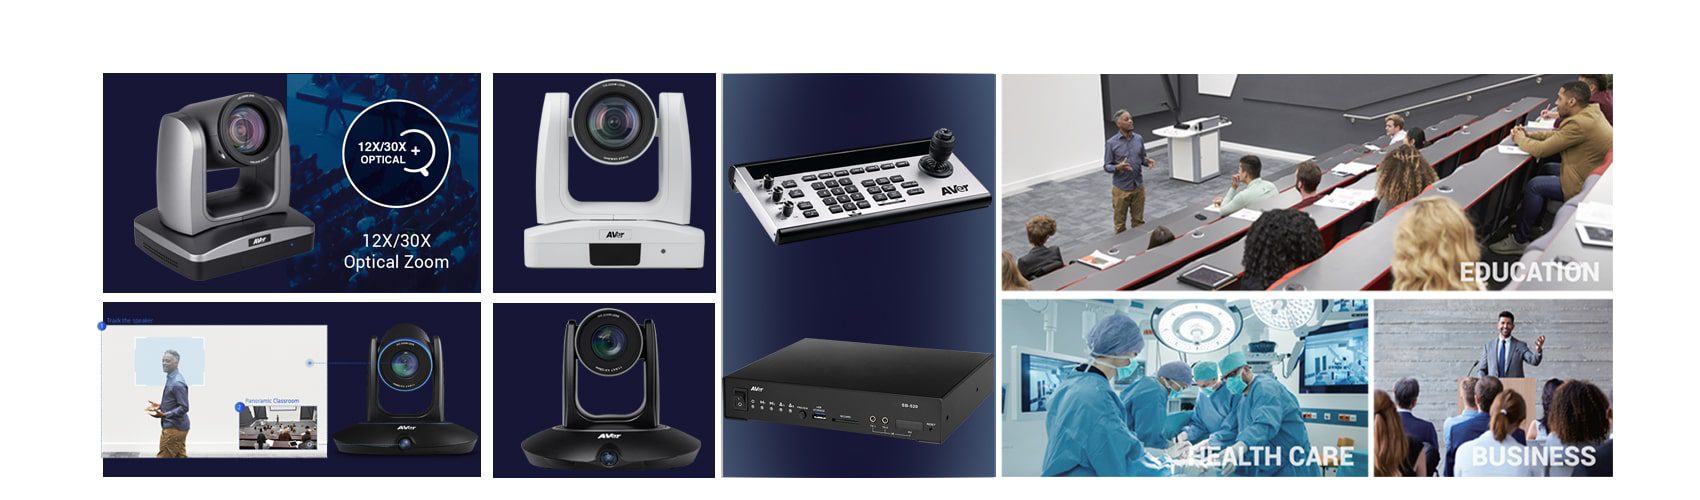 دوربین های اتوترکینگ دیجیتال و هوشمند AVER PTZ + کنترلر دوربین، (رکوردر دوربین سالن کنفرانس)